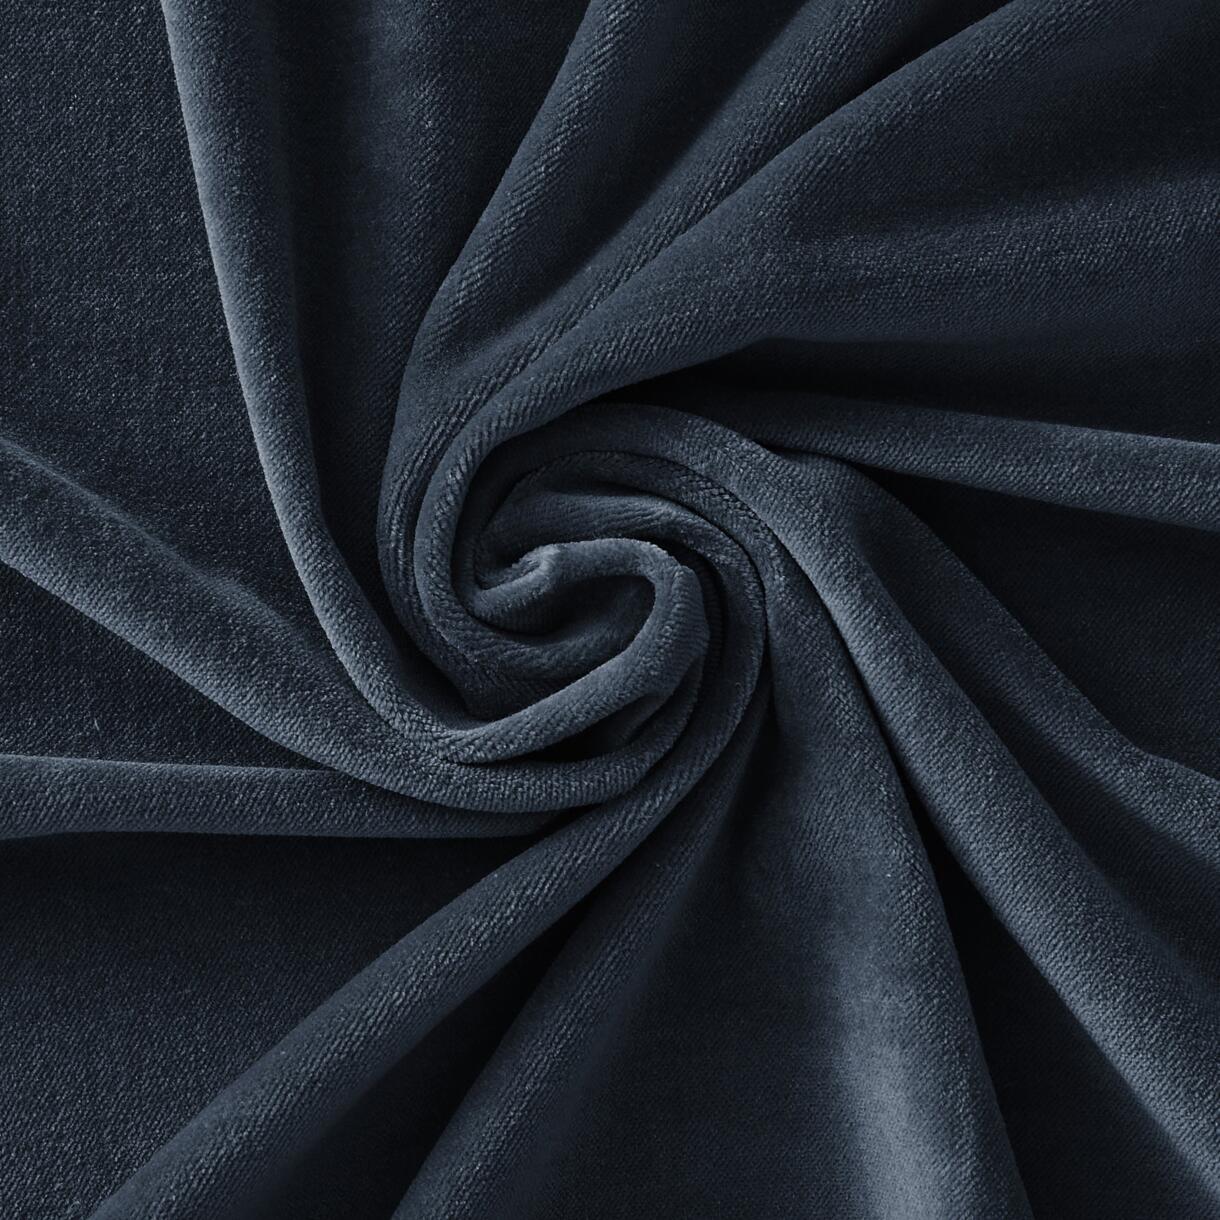 Rideau velours de coton ajustable (140 x max 270 cm) César Bleu nuit 6